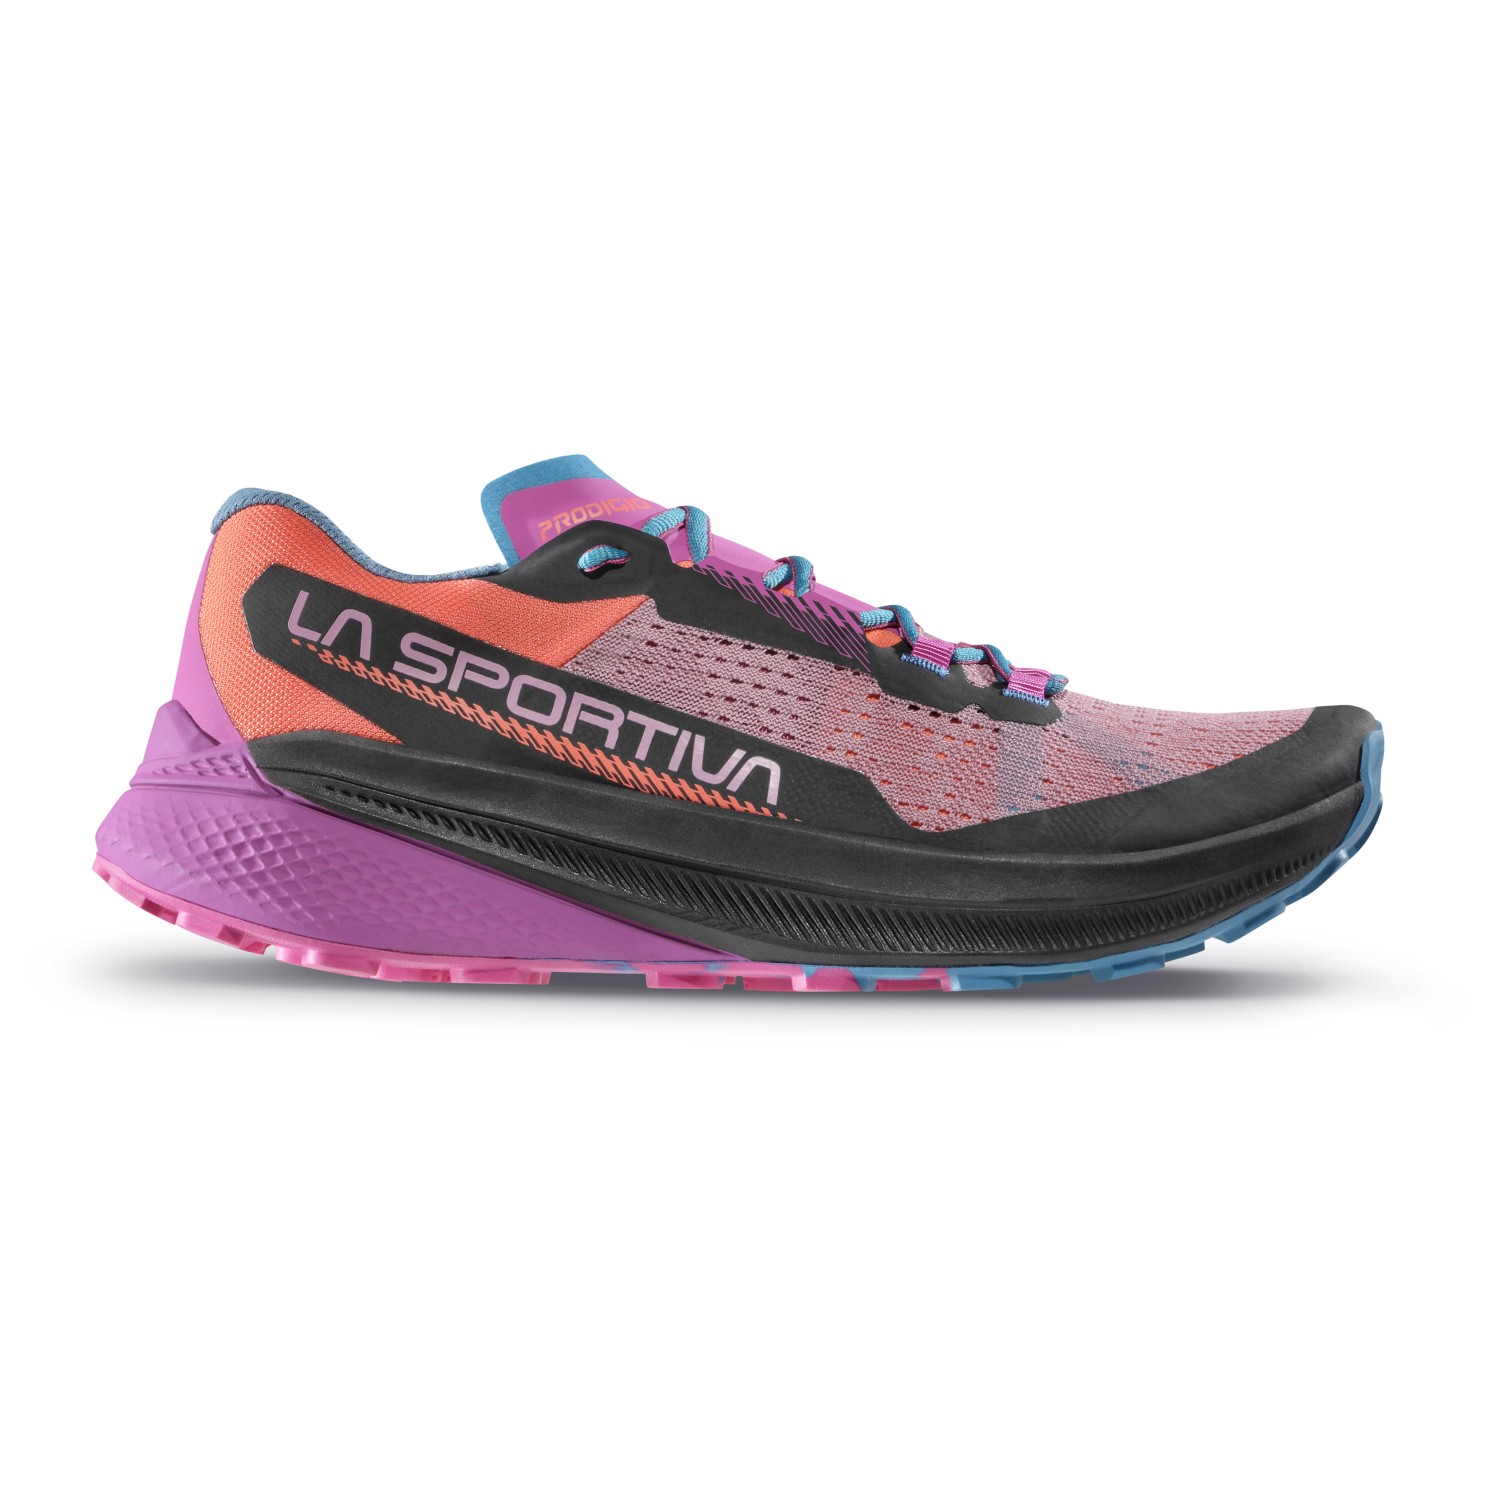 Кроссовки для бега по пересеченной местности La Sportiva Women's Prodigio, цвет Rose/Springtime цена и фото